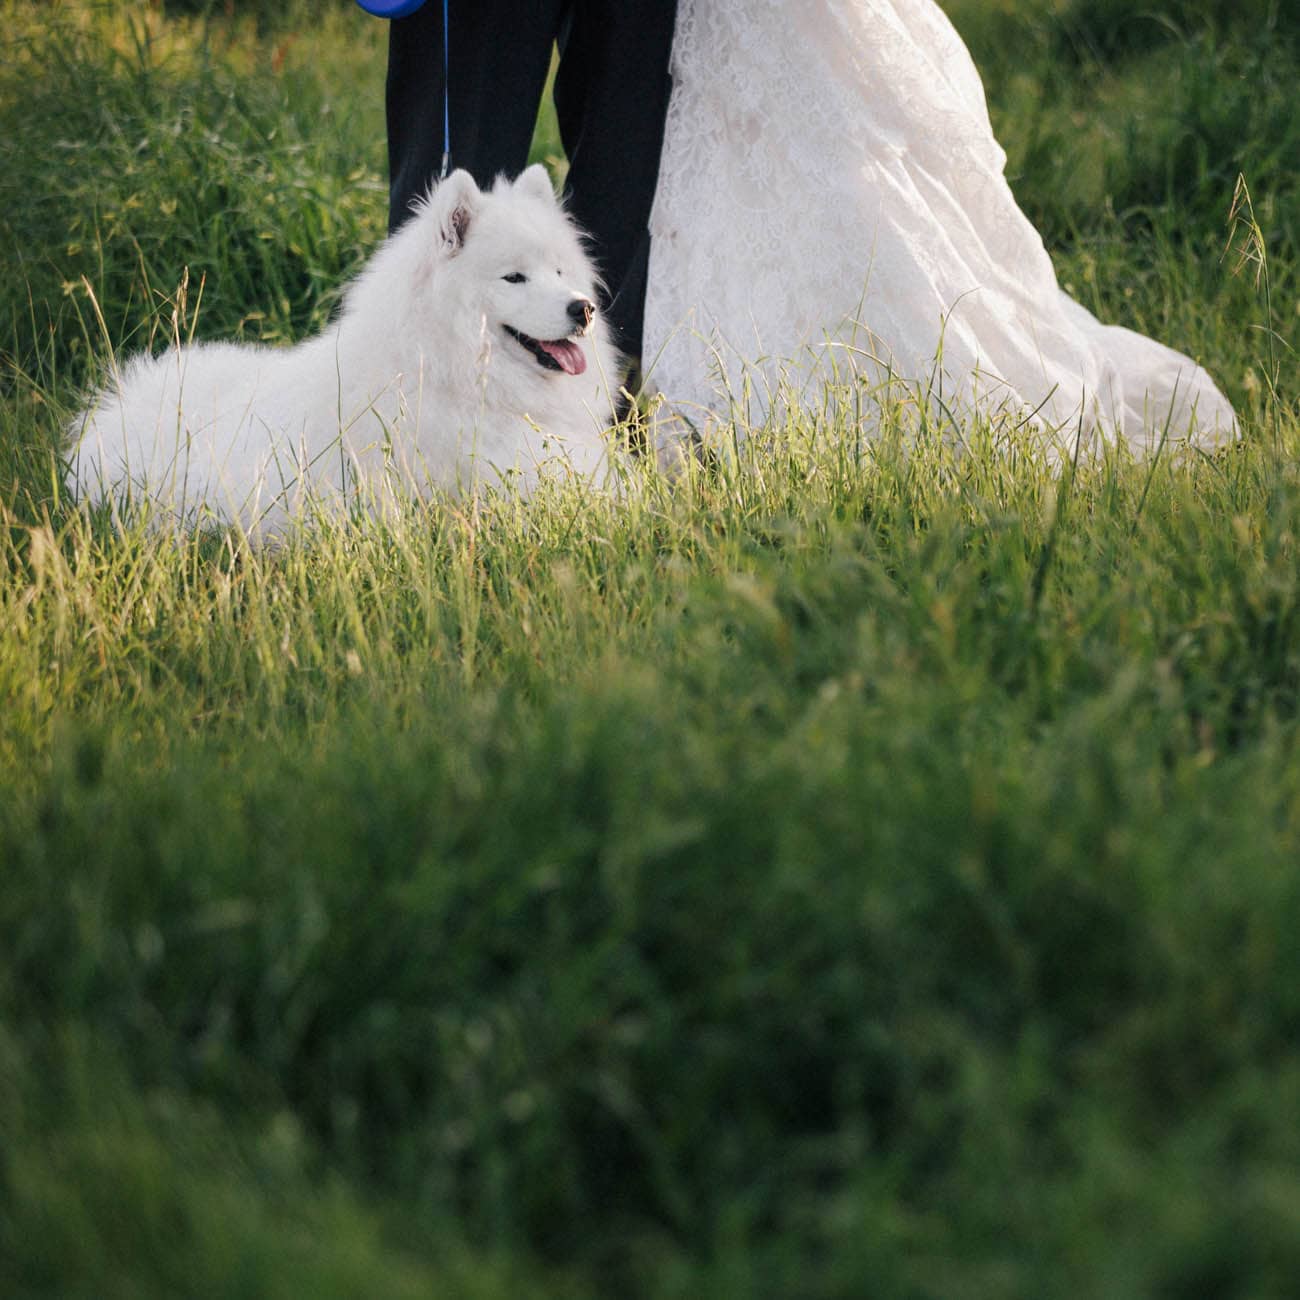 Dogs in weddings 001 1